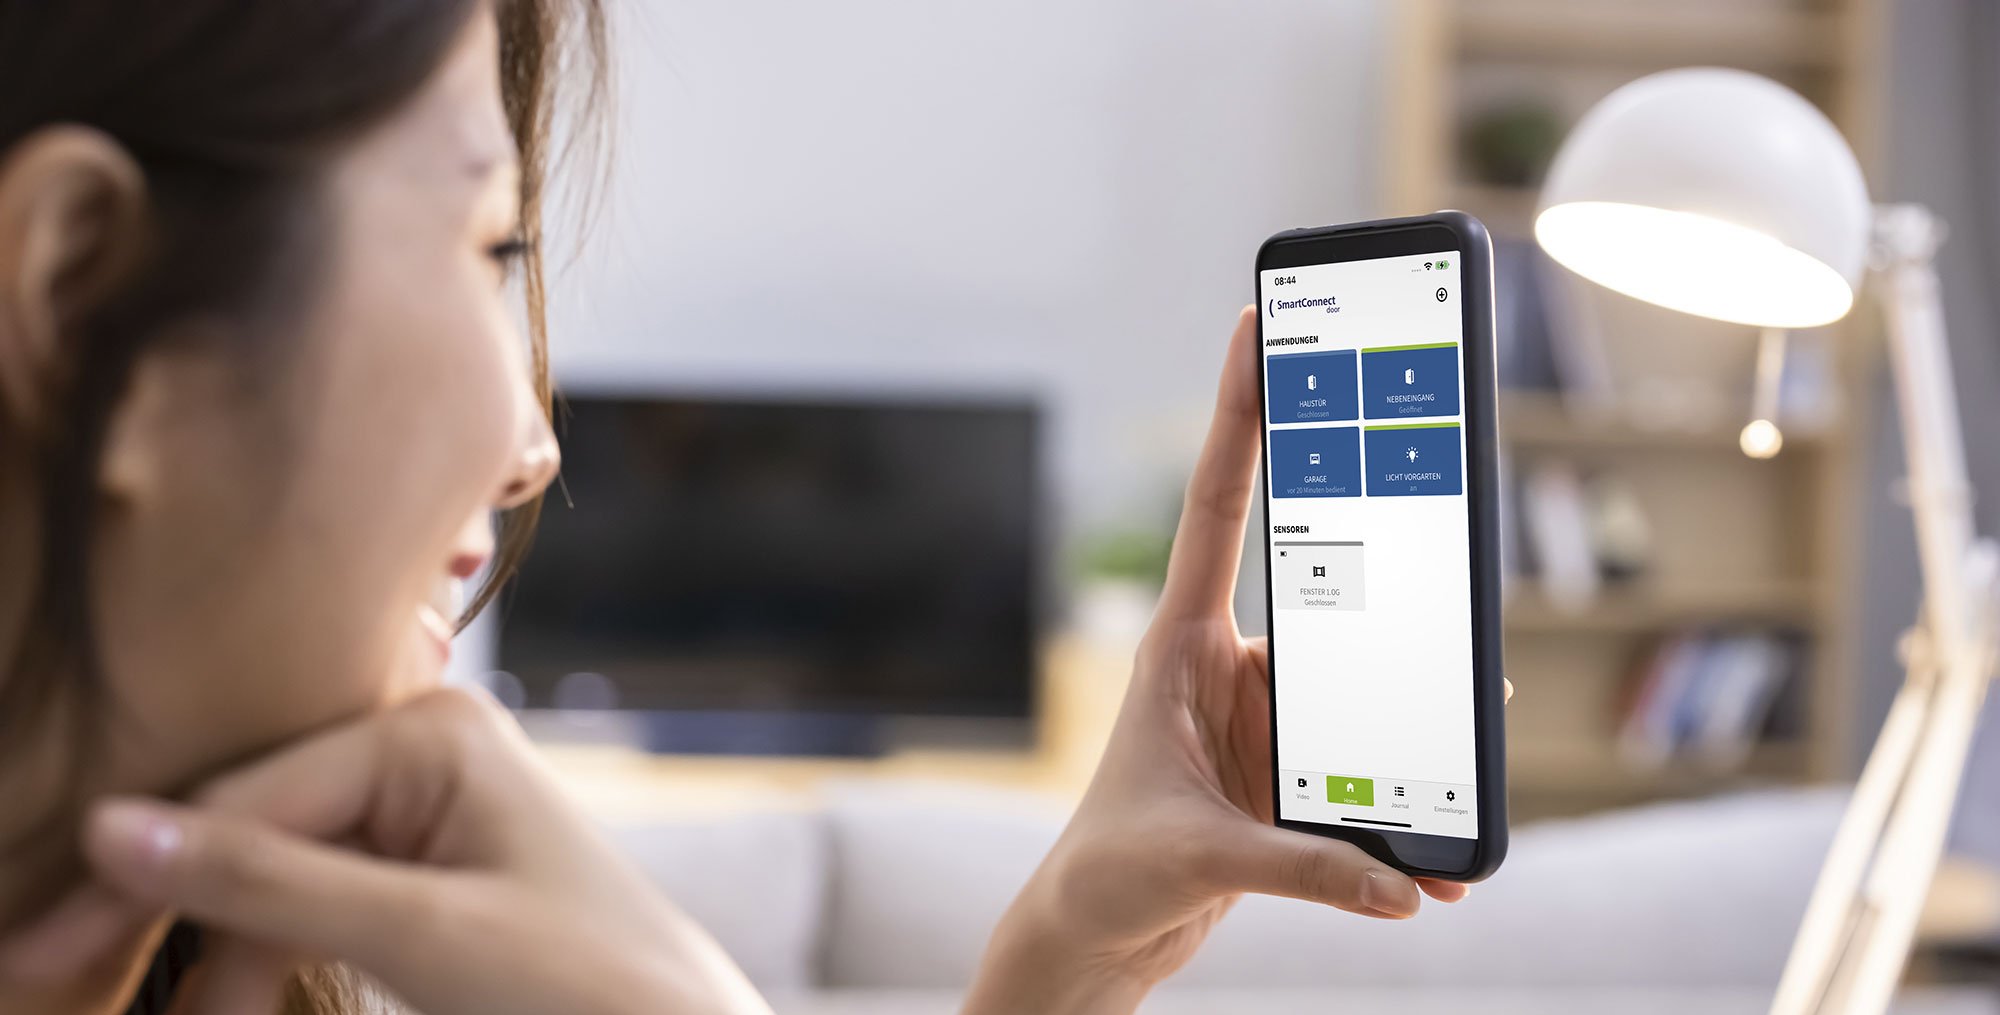 SmartHome-Systeme von FUHR für eine smarte Haustür: Steuern und überwachen der Türen von unterwegs mit dem Smartphone oder Tablet.